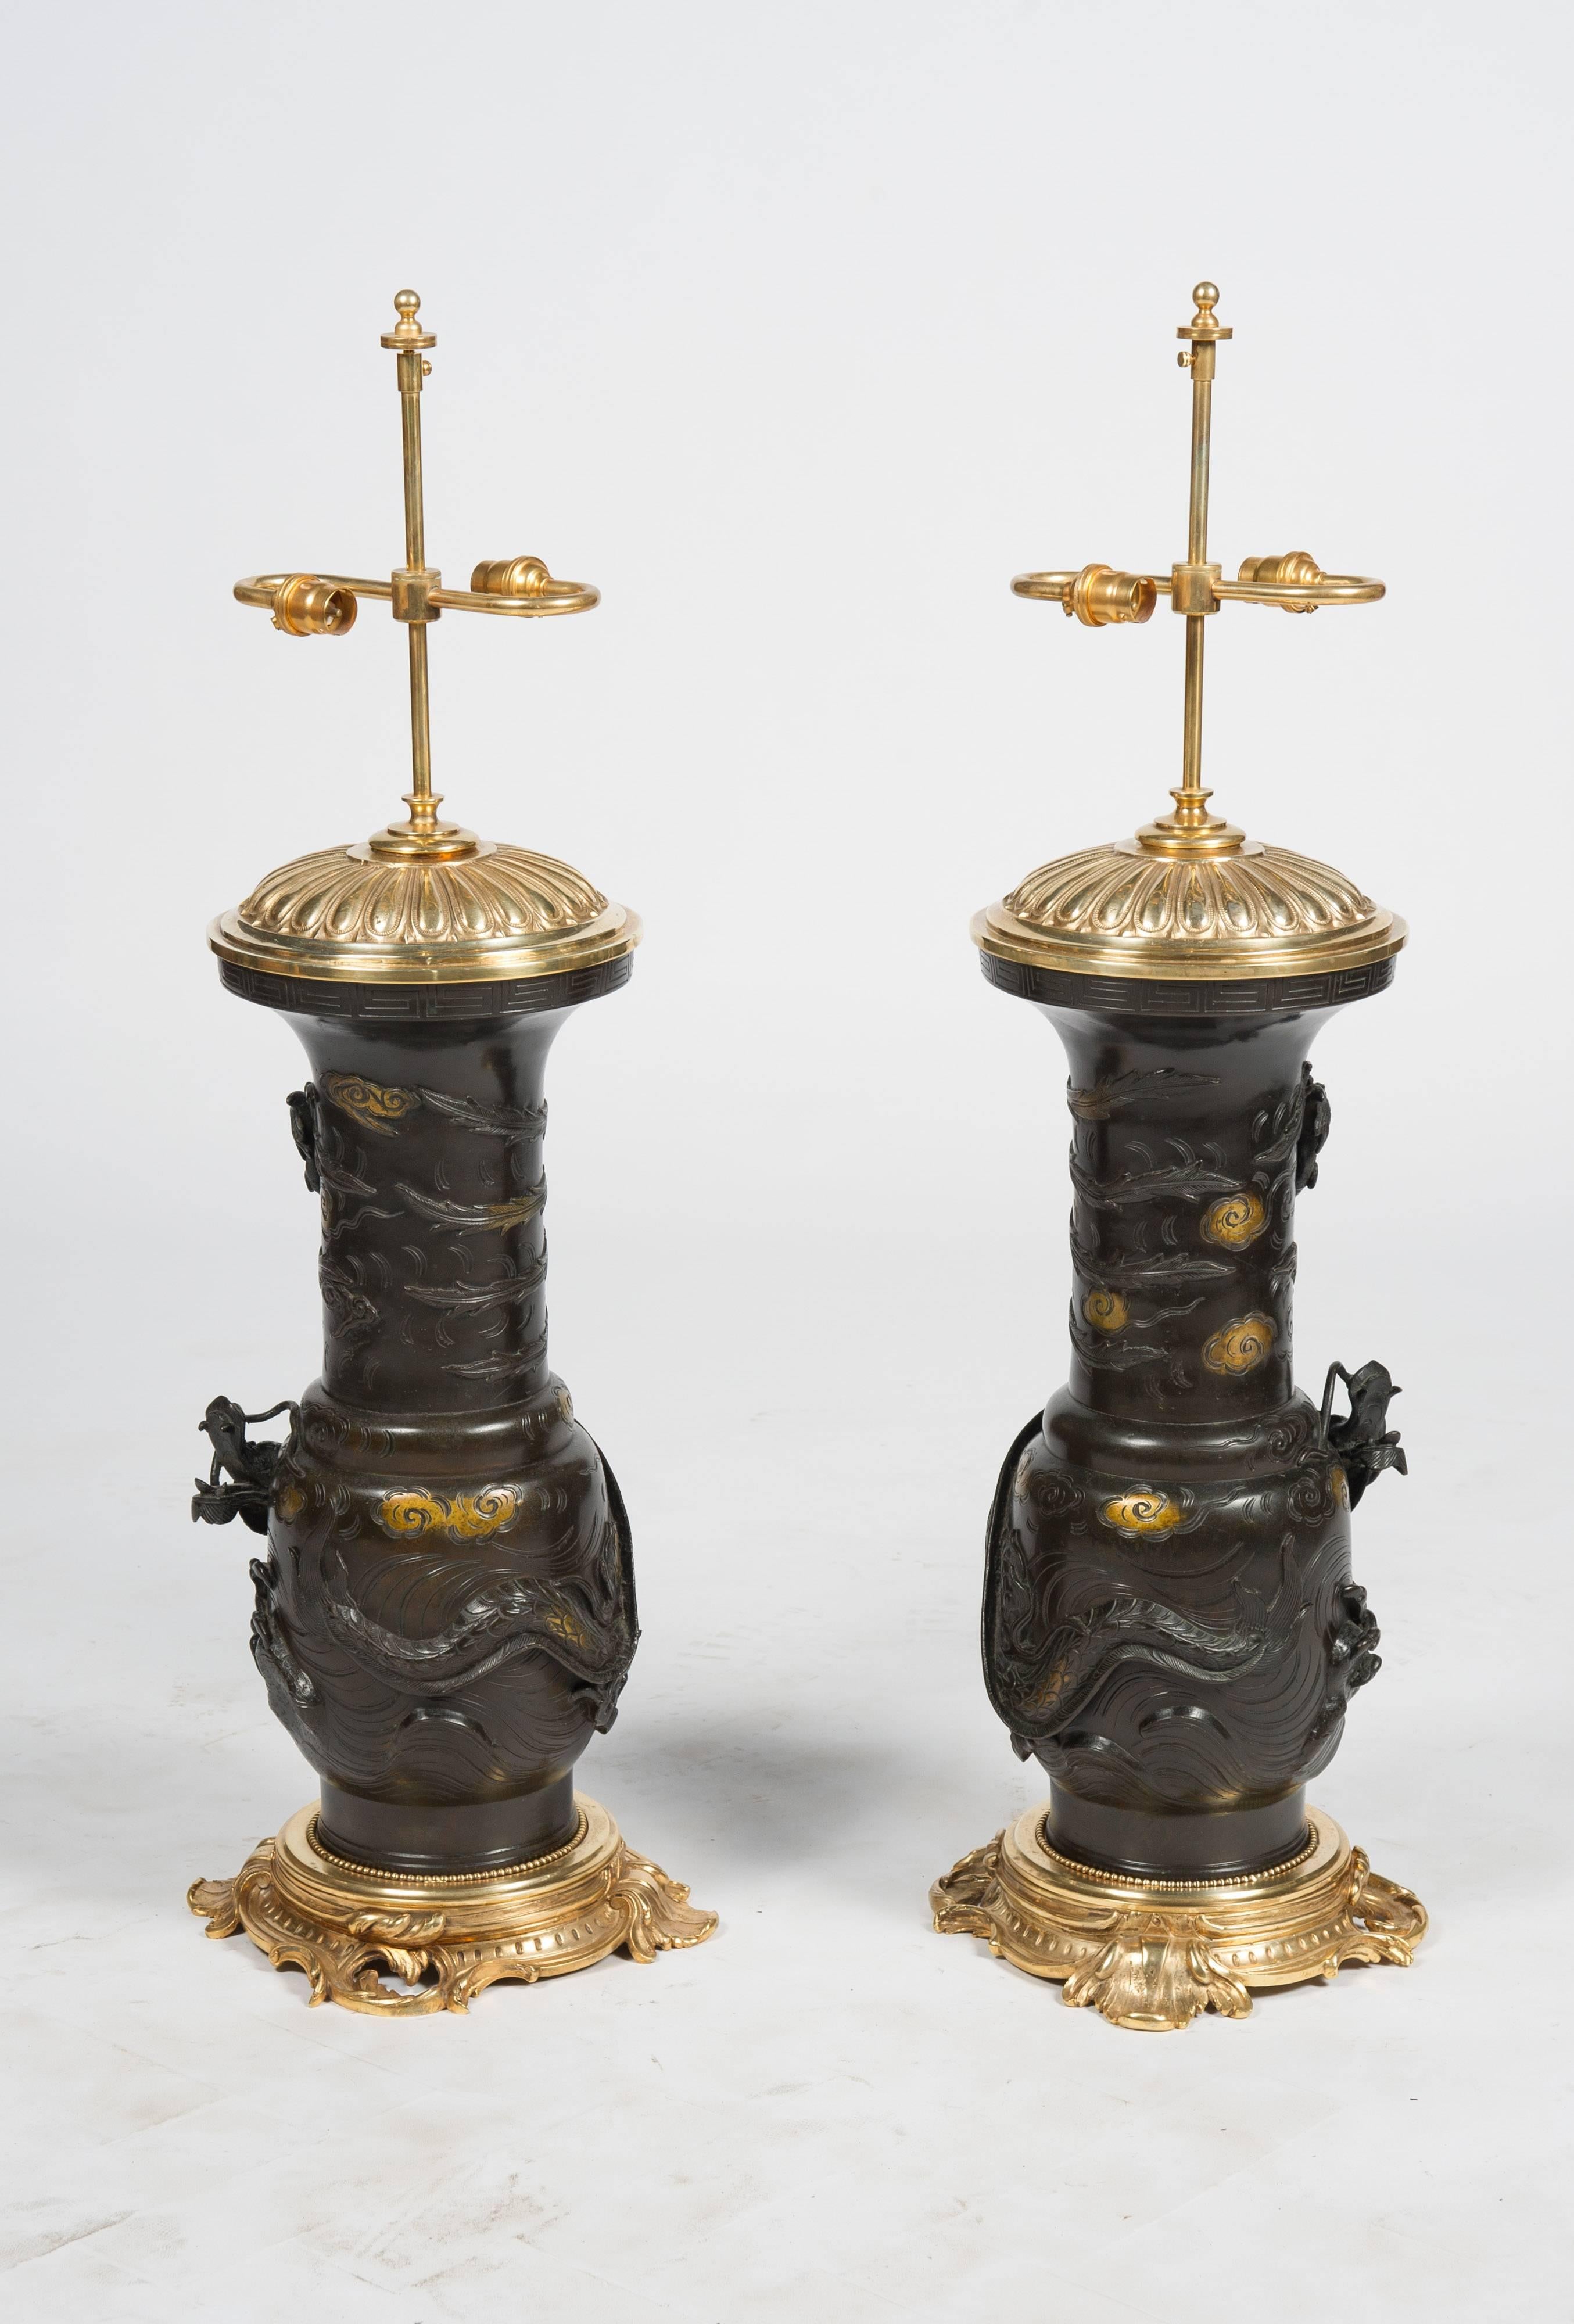 Une paire très impressionnante de vases en bronze du 19ème siècle, de la période Meiji (1868-1912), chacun avec des dragons mythiques enroulés autour d'eux, rehauts dorés. Montés sur des socles et des plateaux de style rococo en bronze doré.